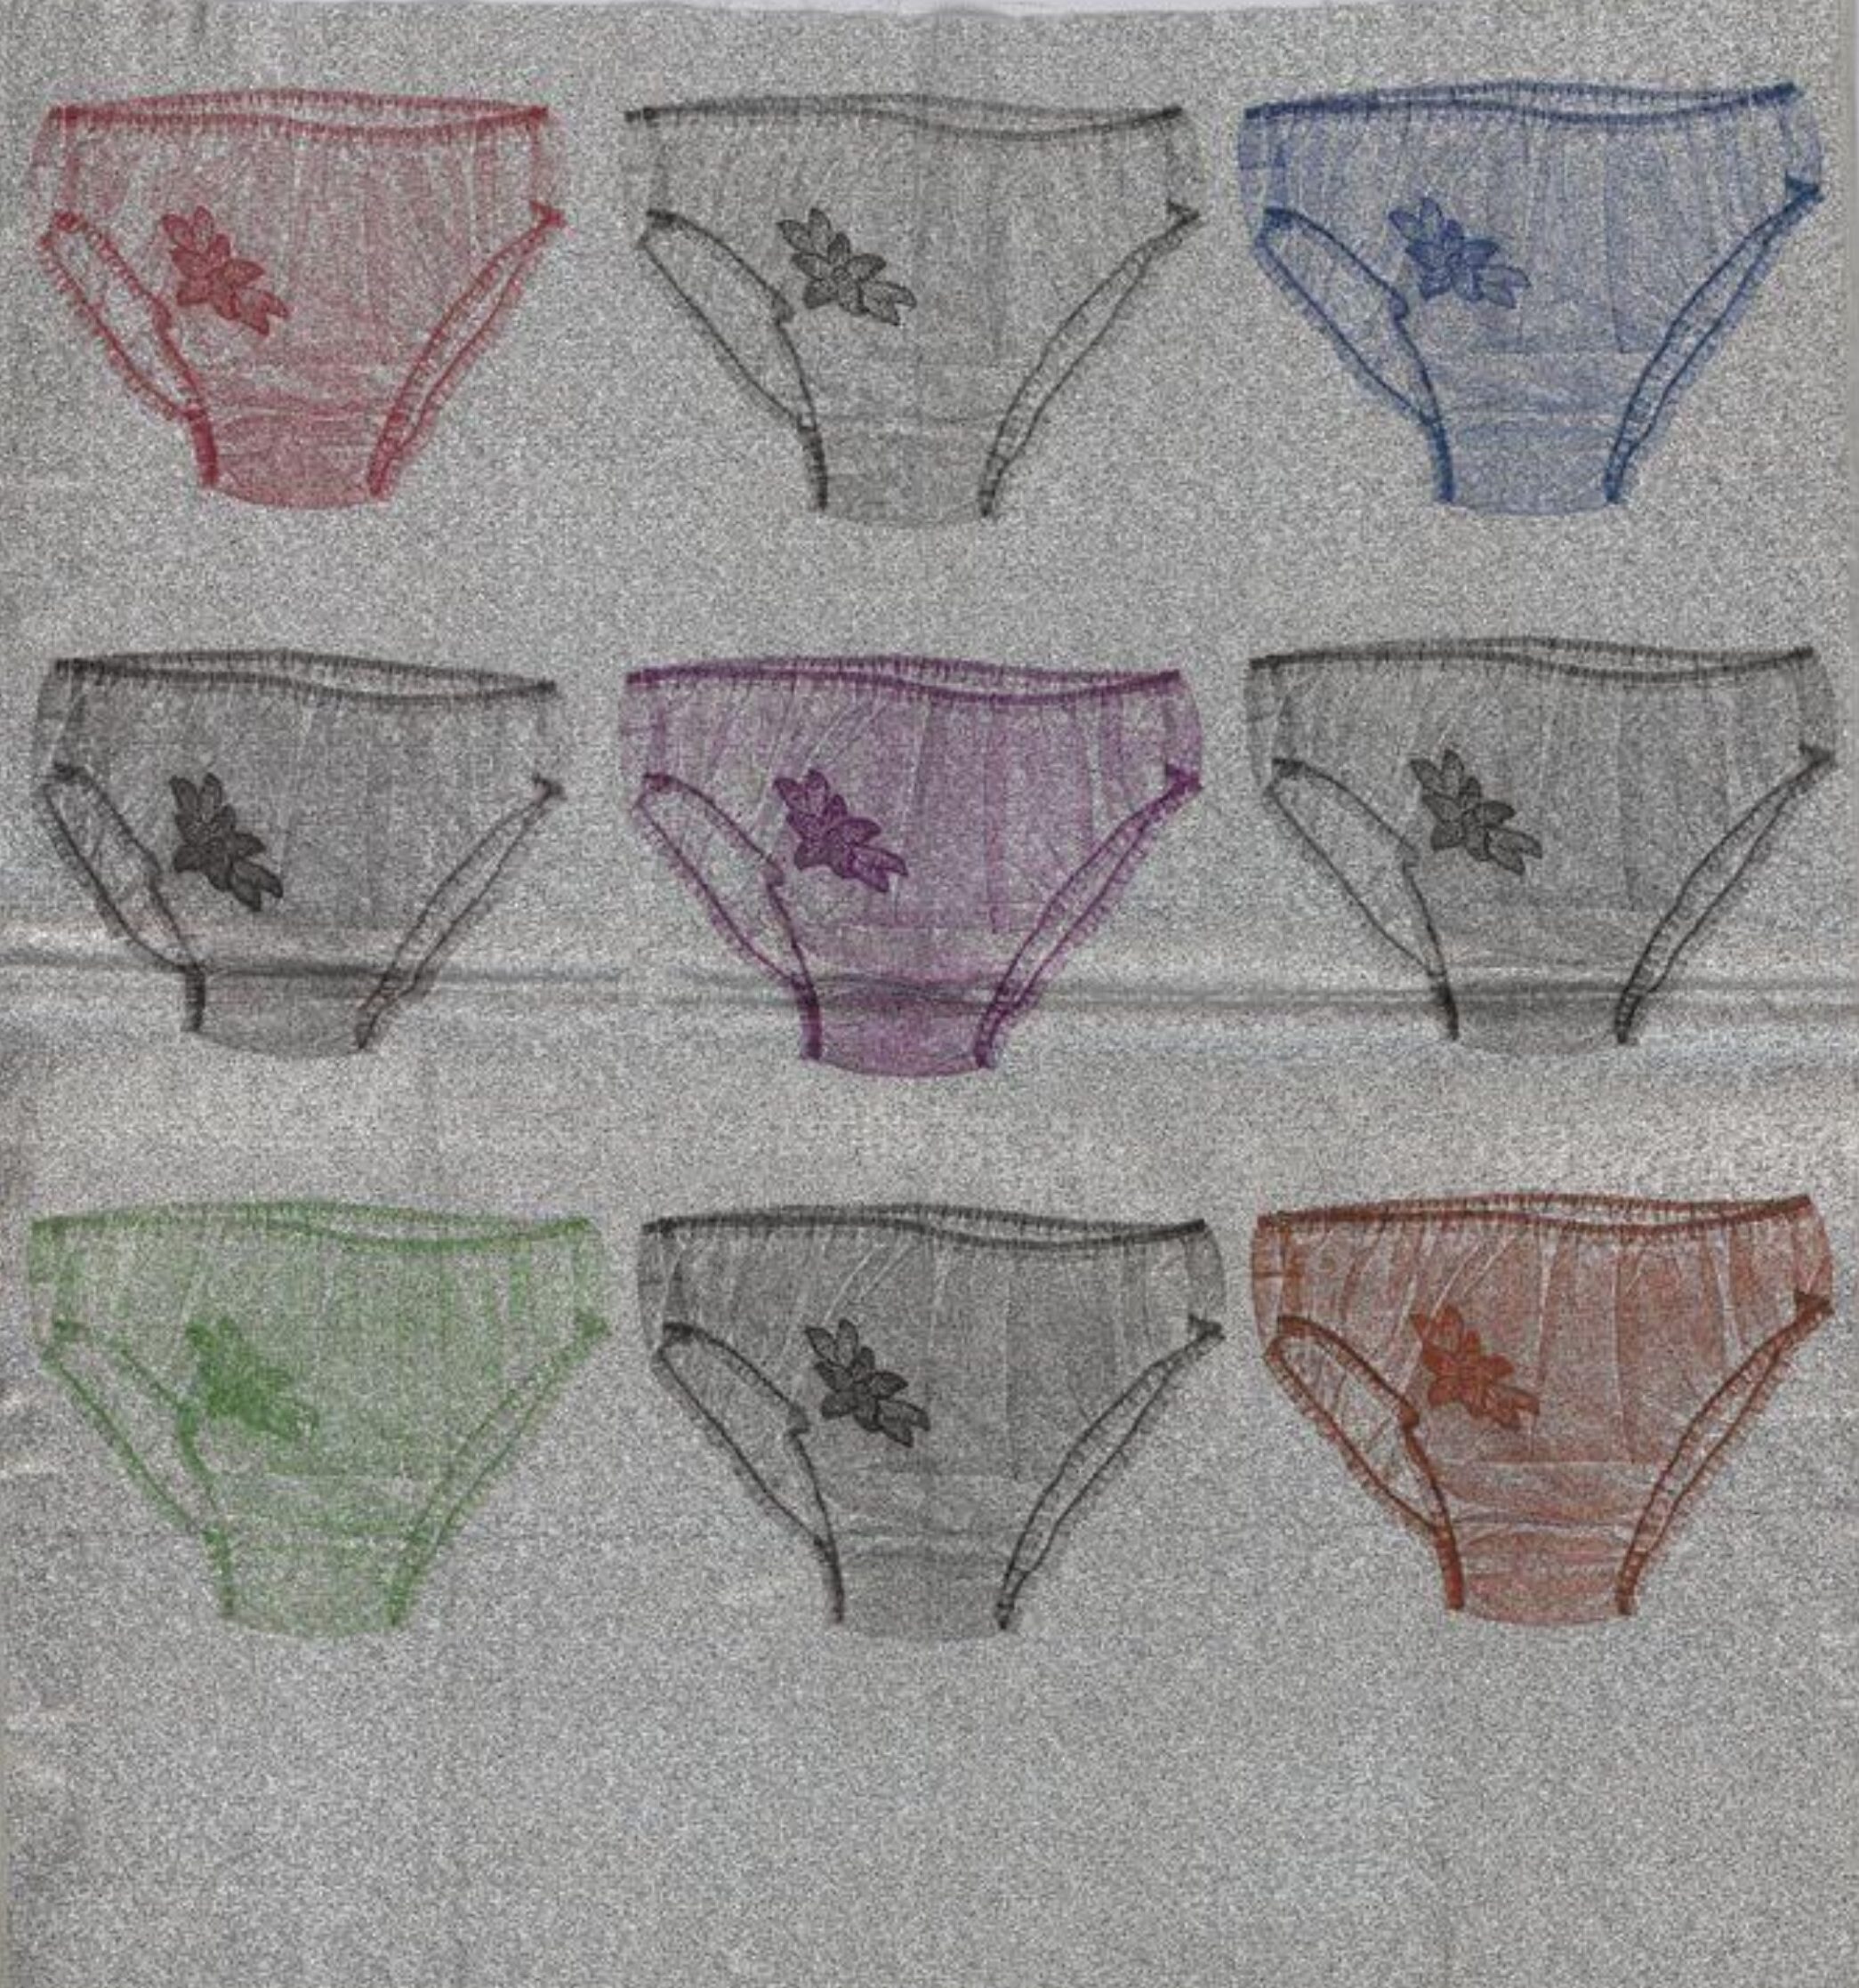 Women's Underwear Through the Years